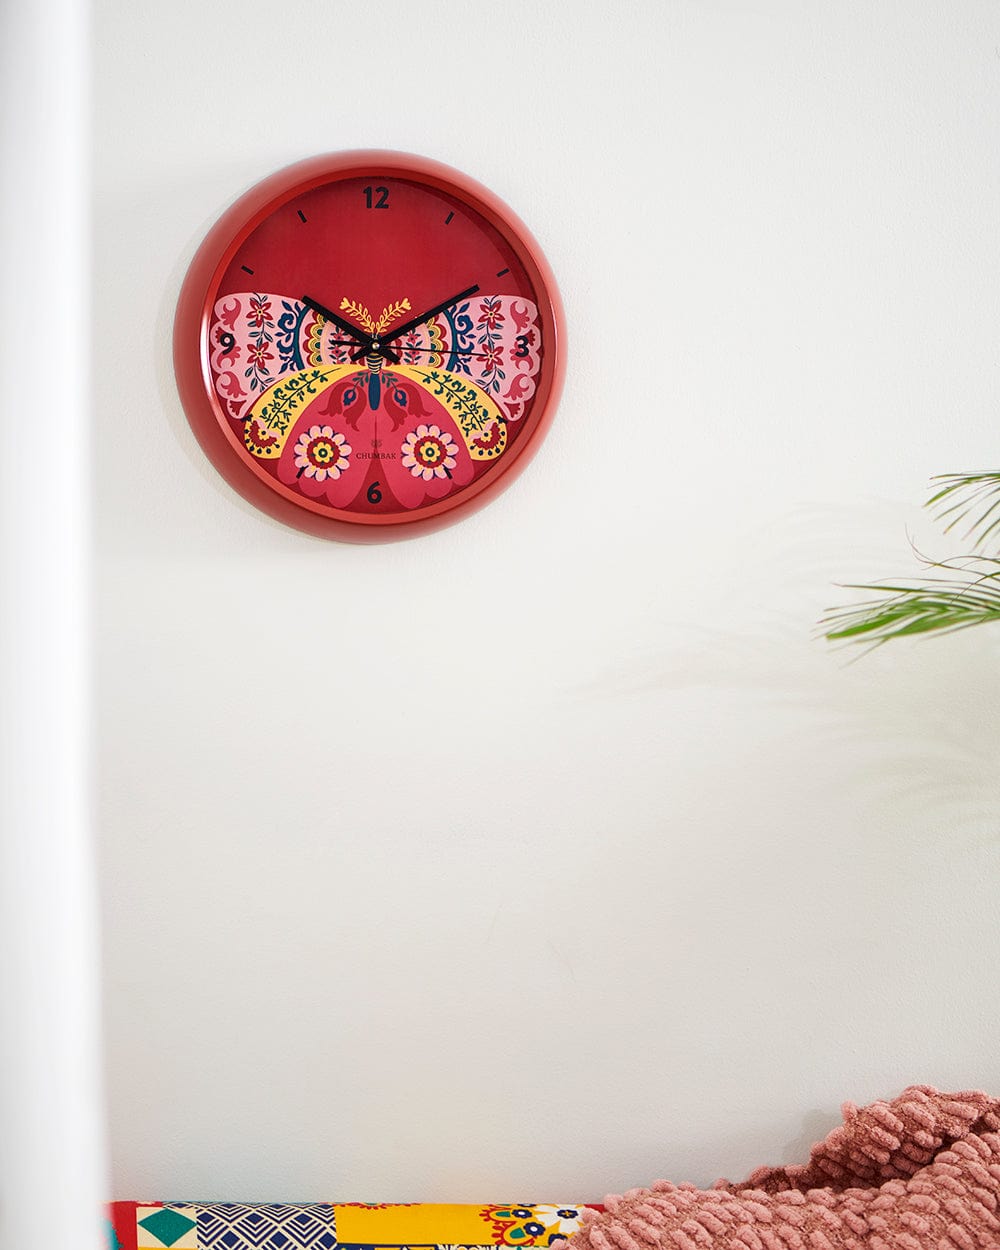 Chumbak Chumbak Suzani Butterfly Wall Clock- Red rim